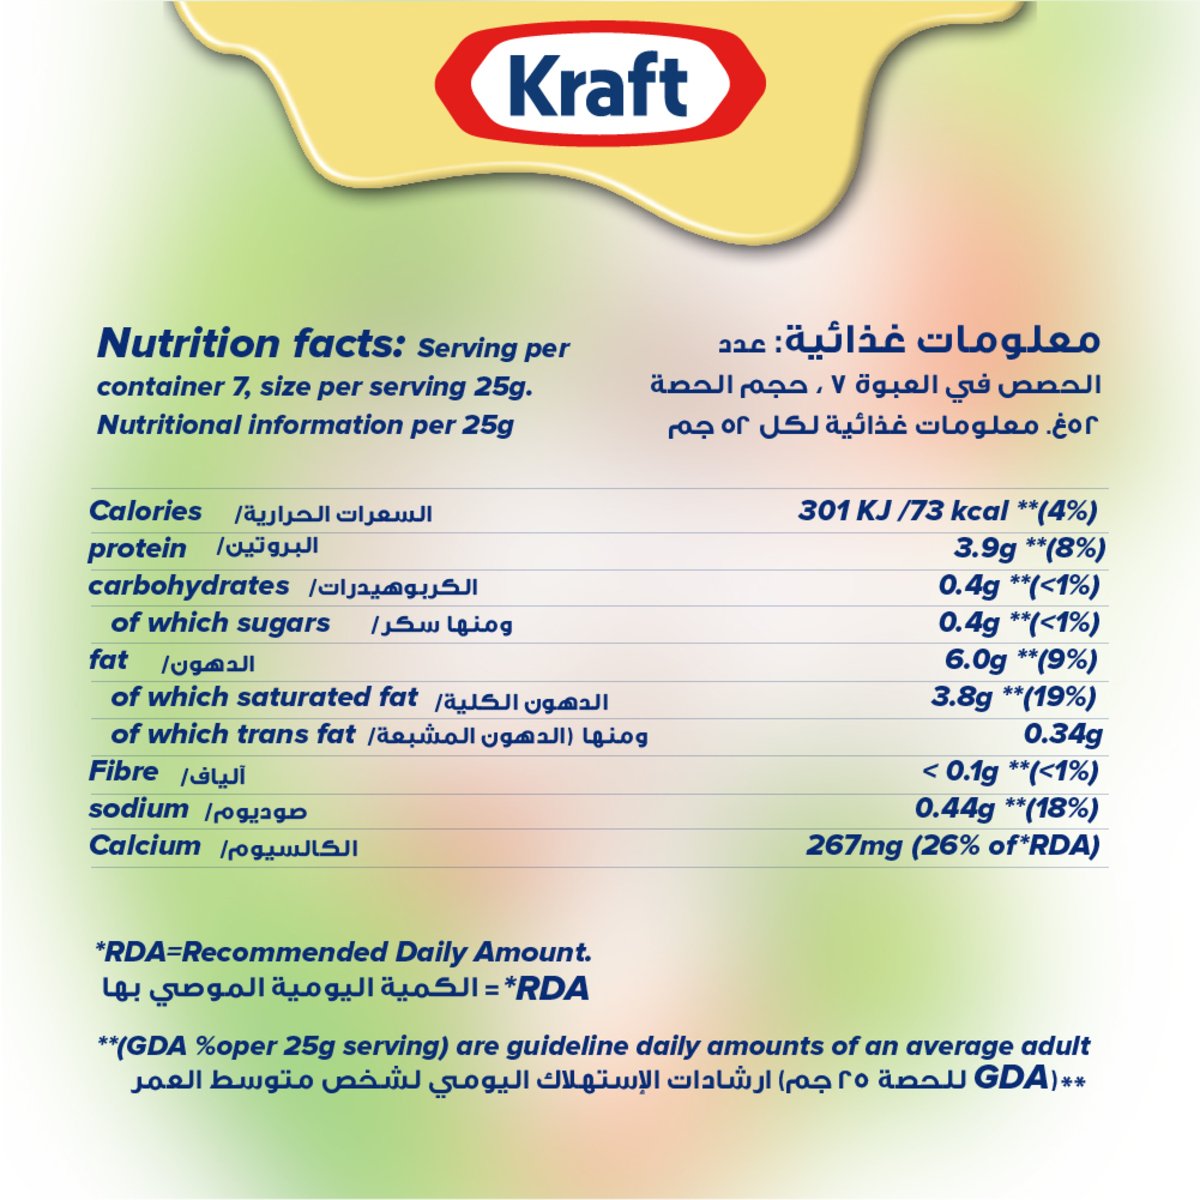 Kraft Cheddar Cheese 50 g